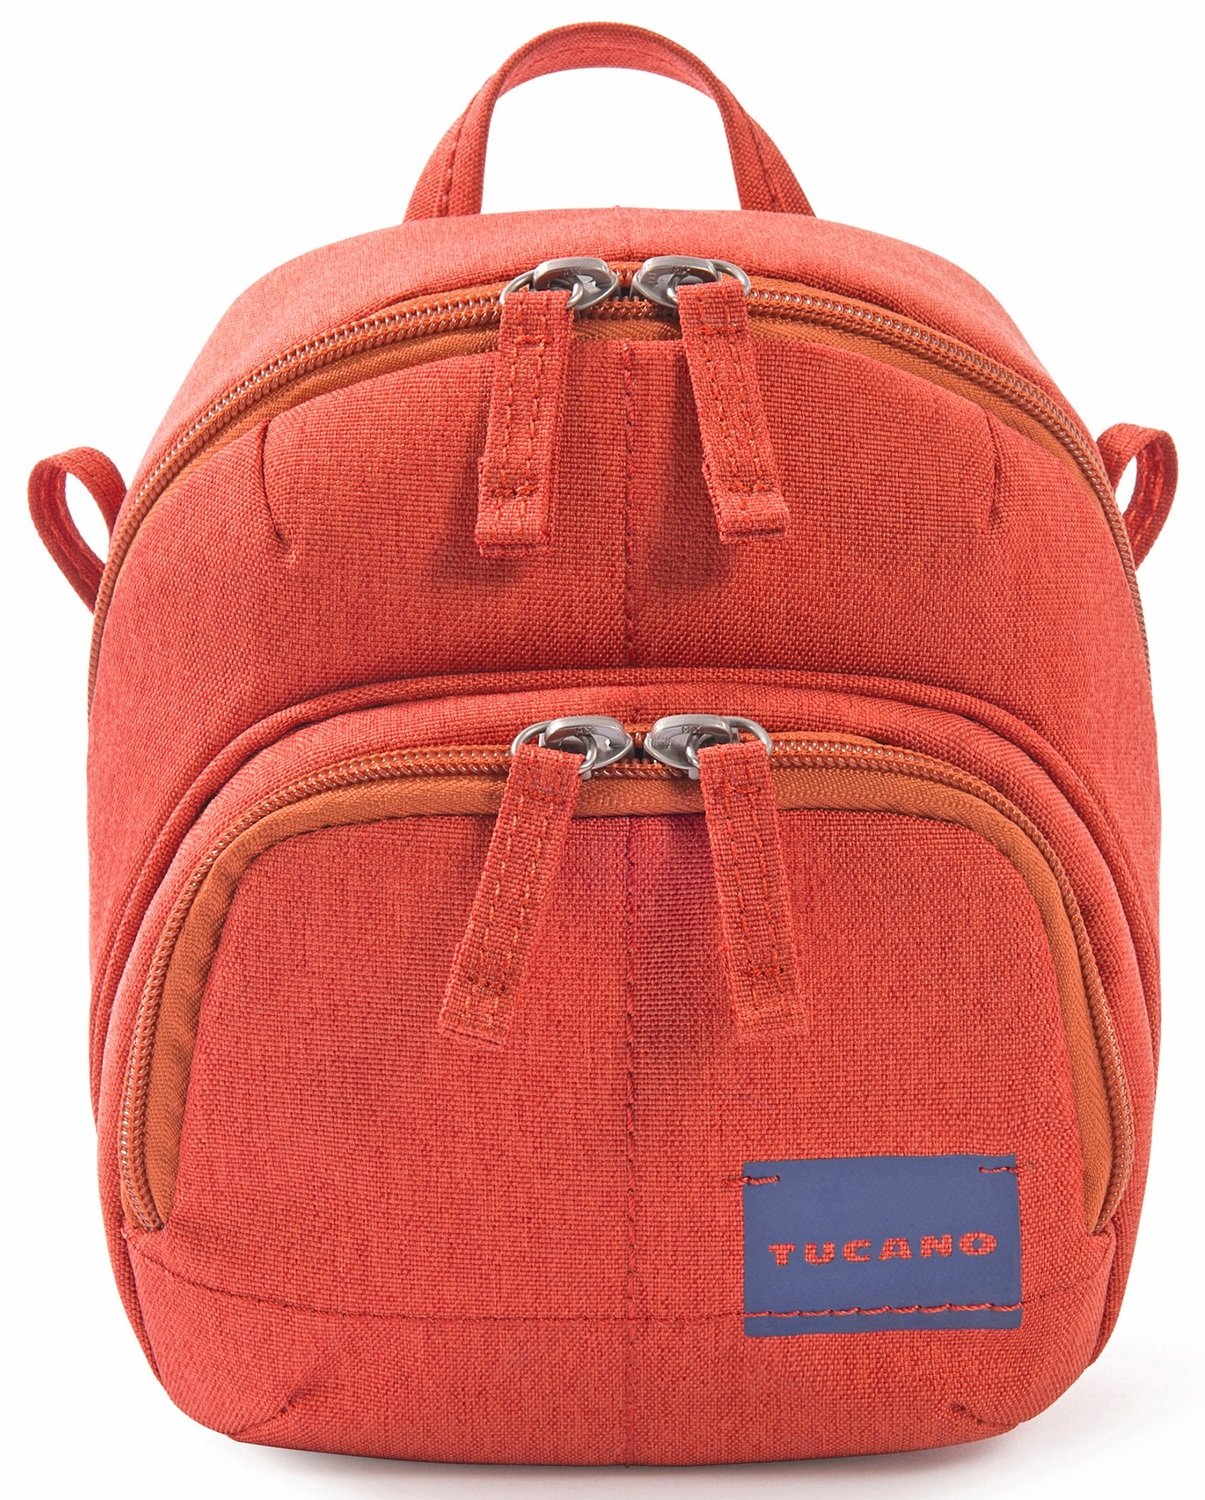 Сумка для фото-видео камеры Tucano Contatto Digital Bag (красная) фото 